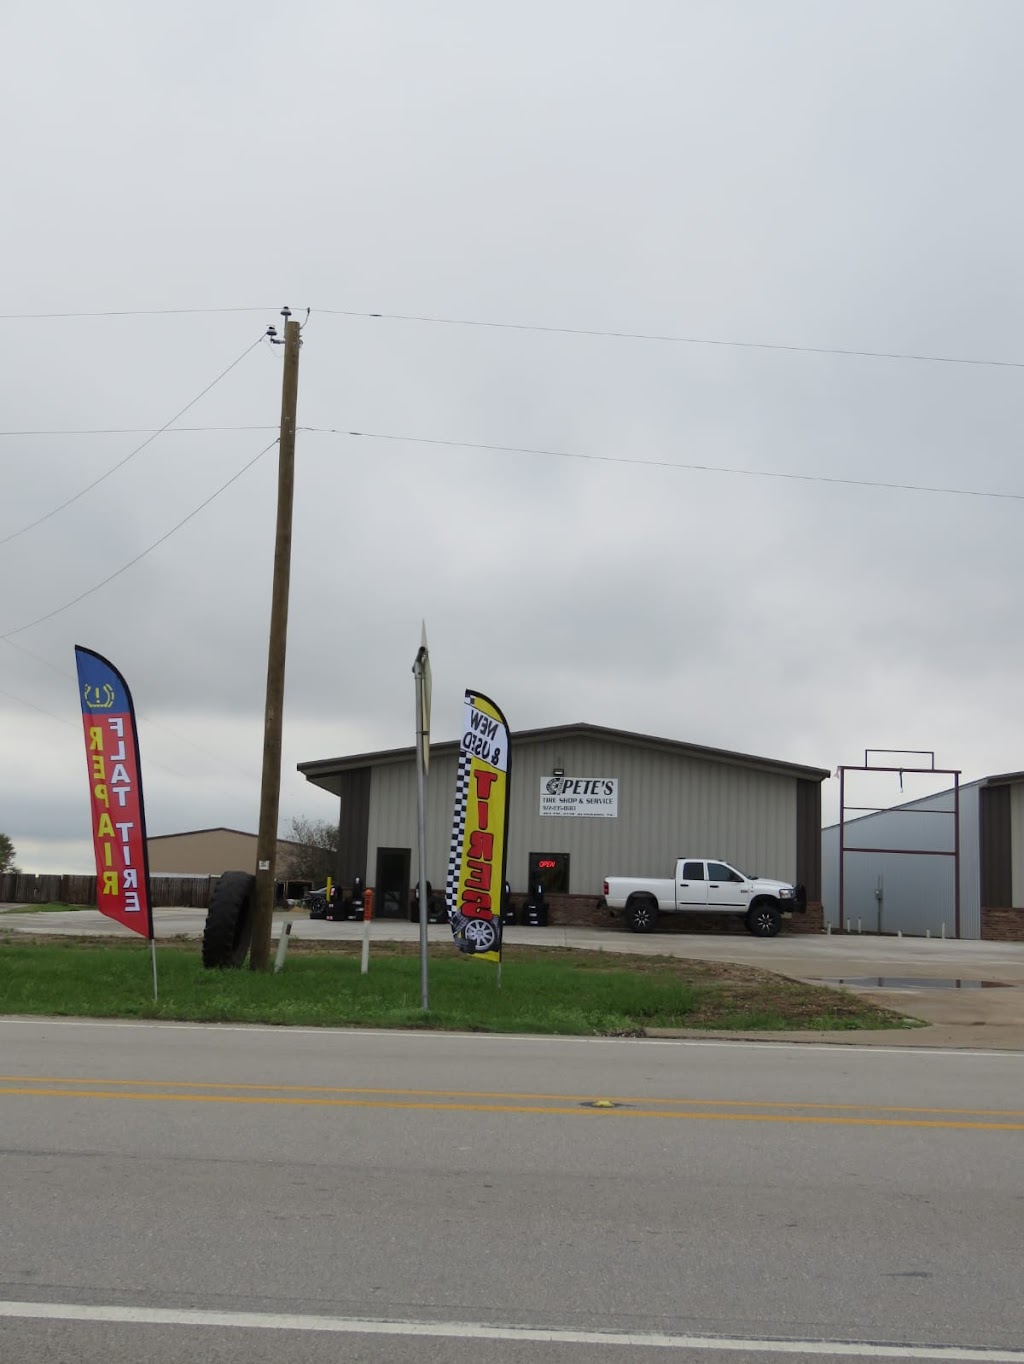 Petes Tire Shop & Service | 201 FM2738, Alvarado, TX 76009, USA | Phone: (972) 835-0683